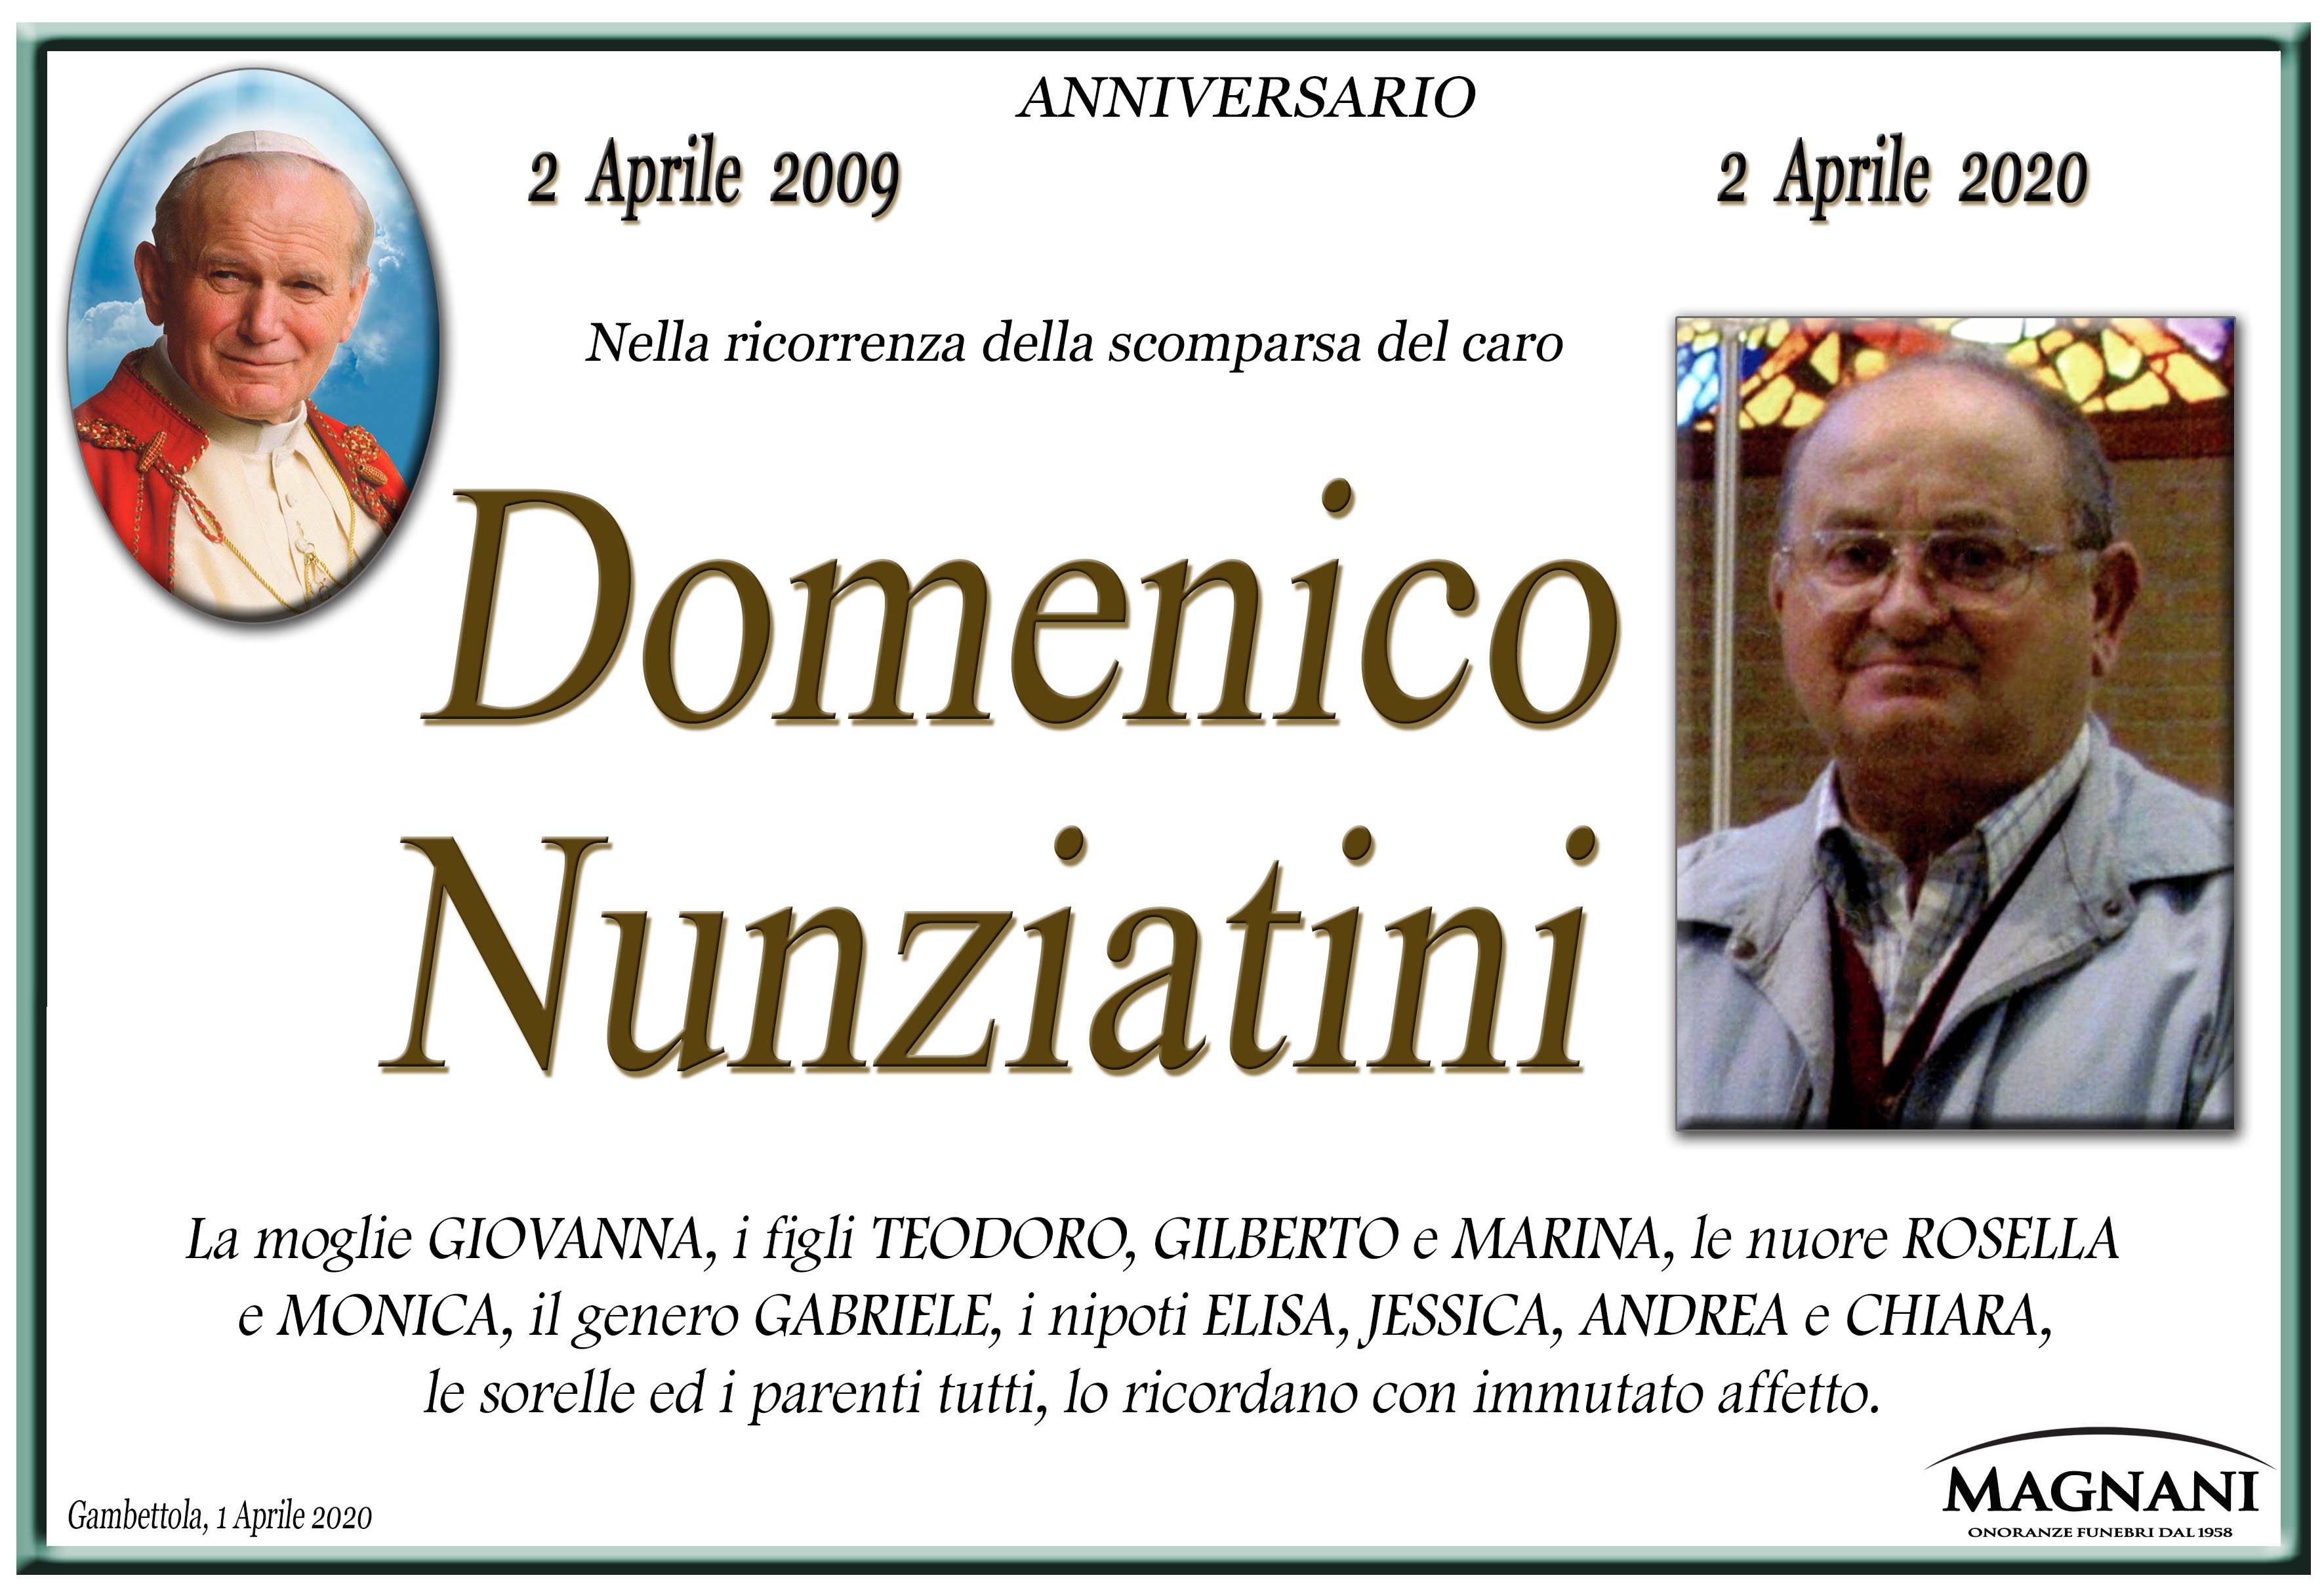 Domenico Nunziatini